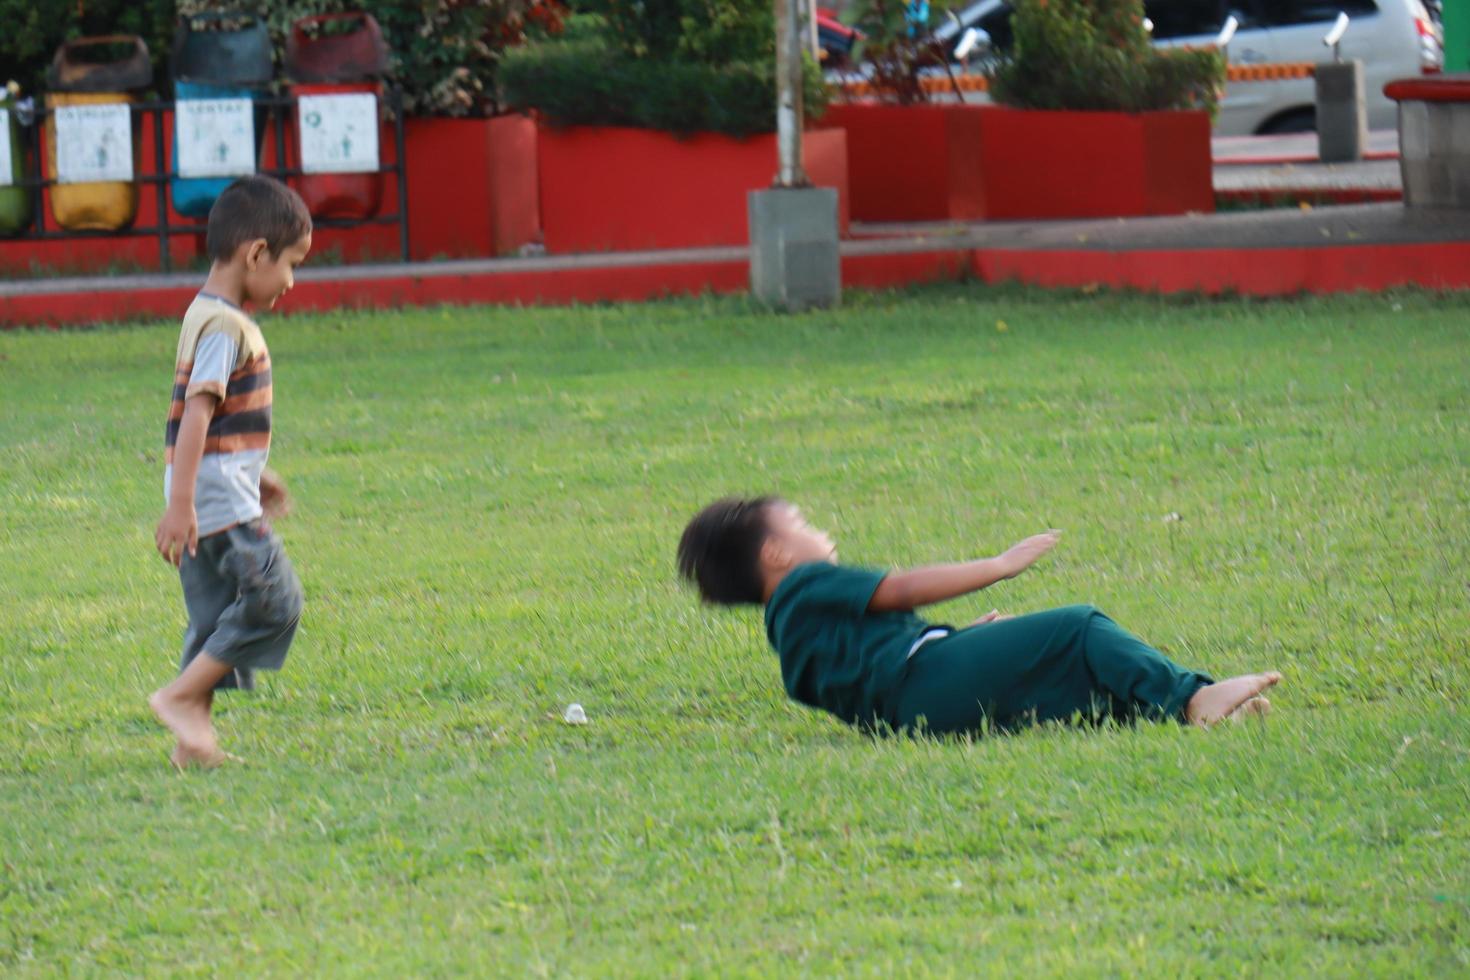 kudus, décembre 2022. photographier de visiteurs séance détendu profiter le après midi sur le herbe de le kudus ville carré. photo